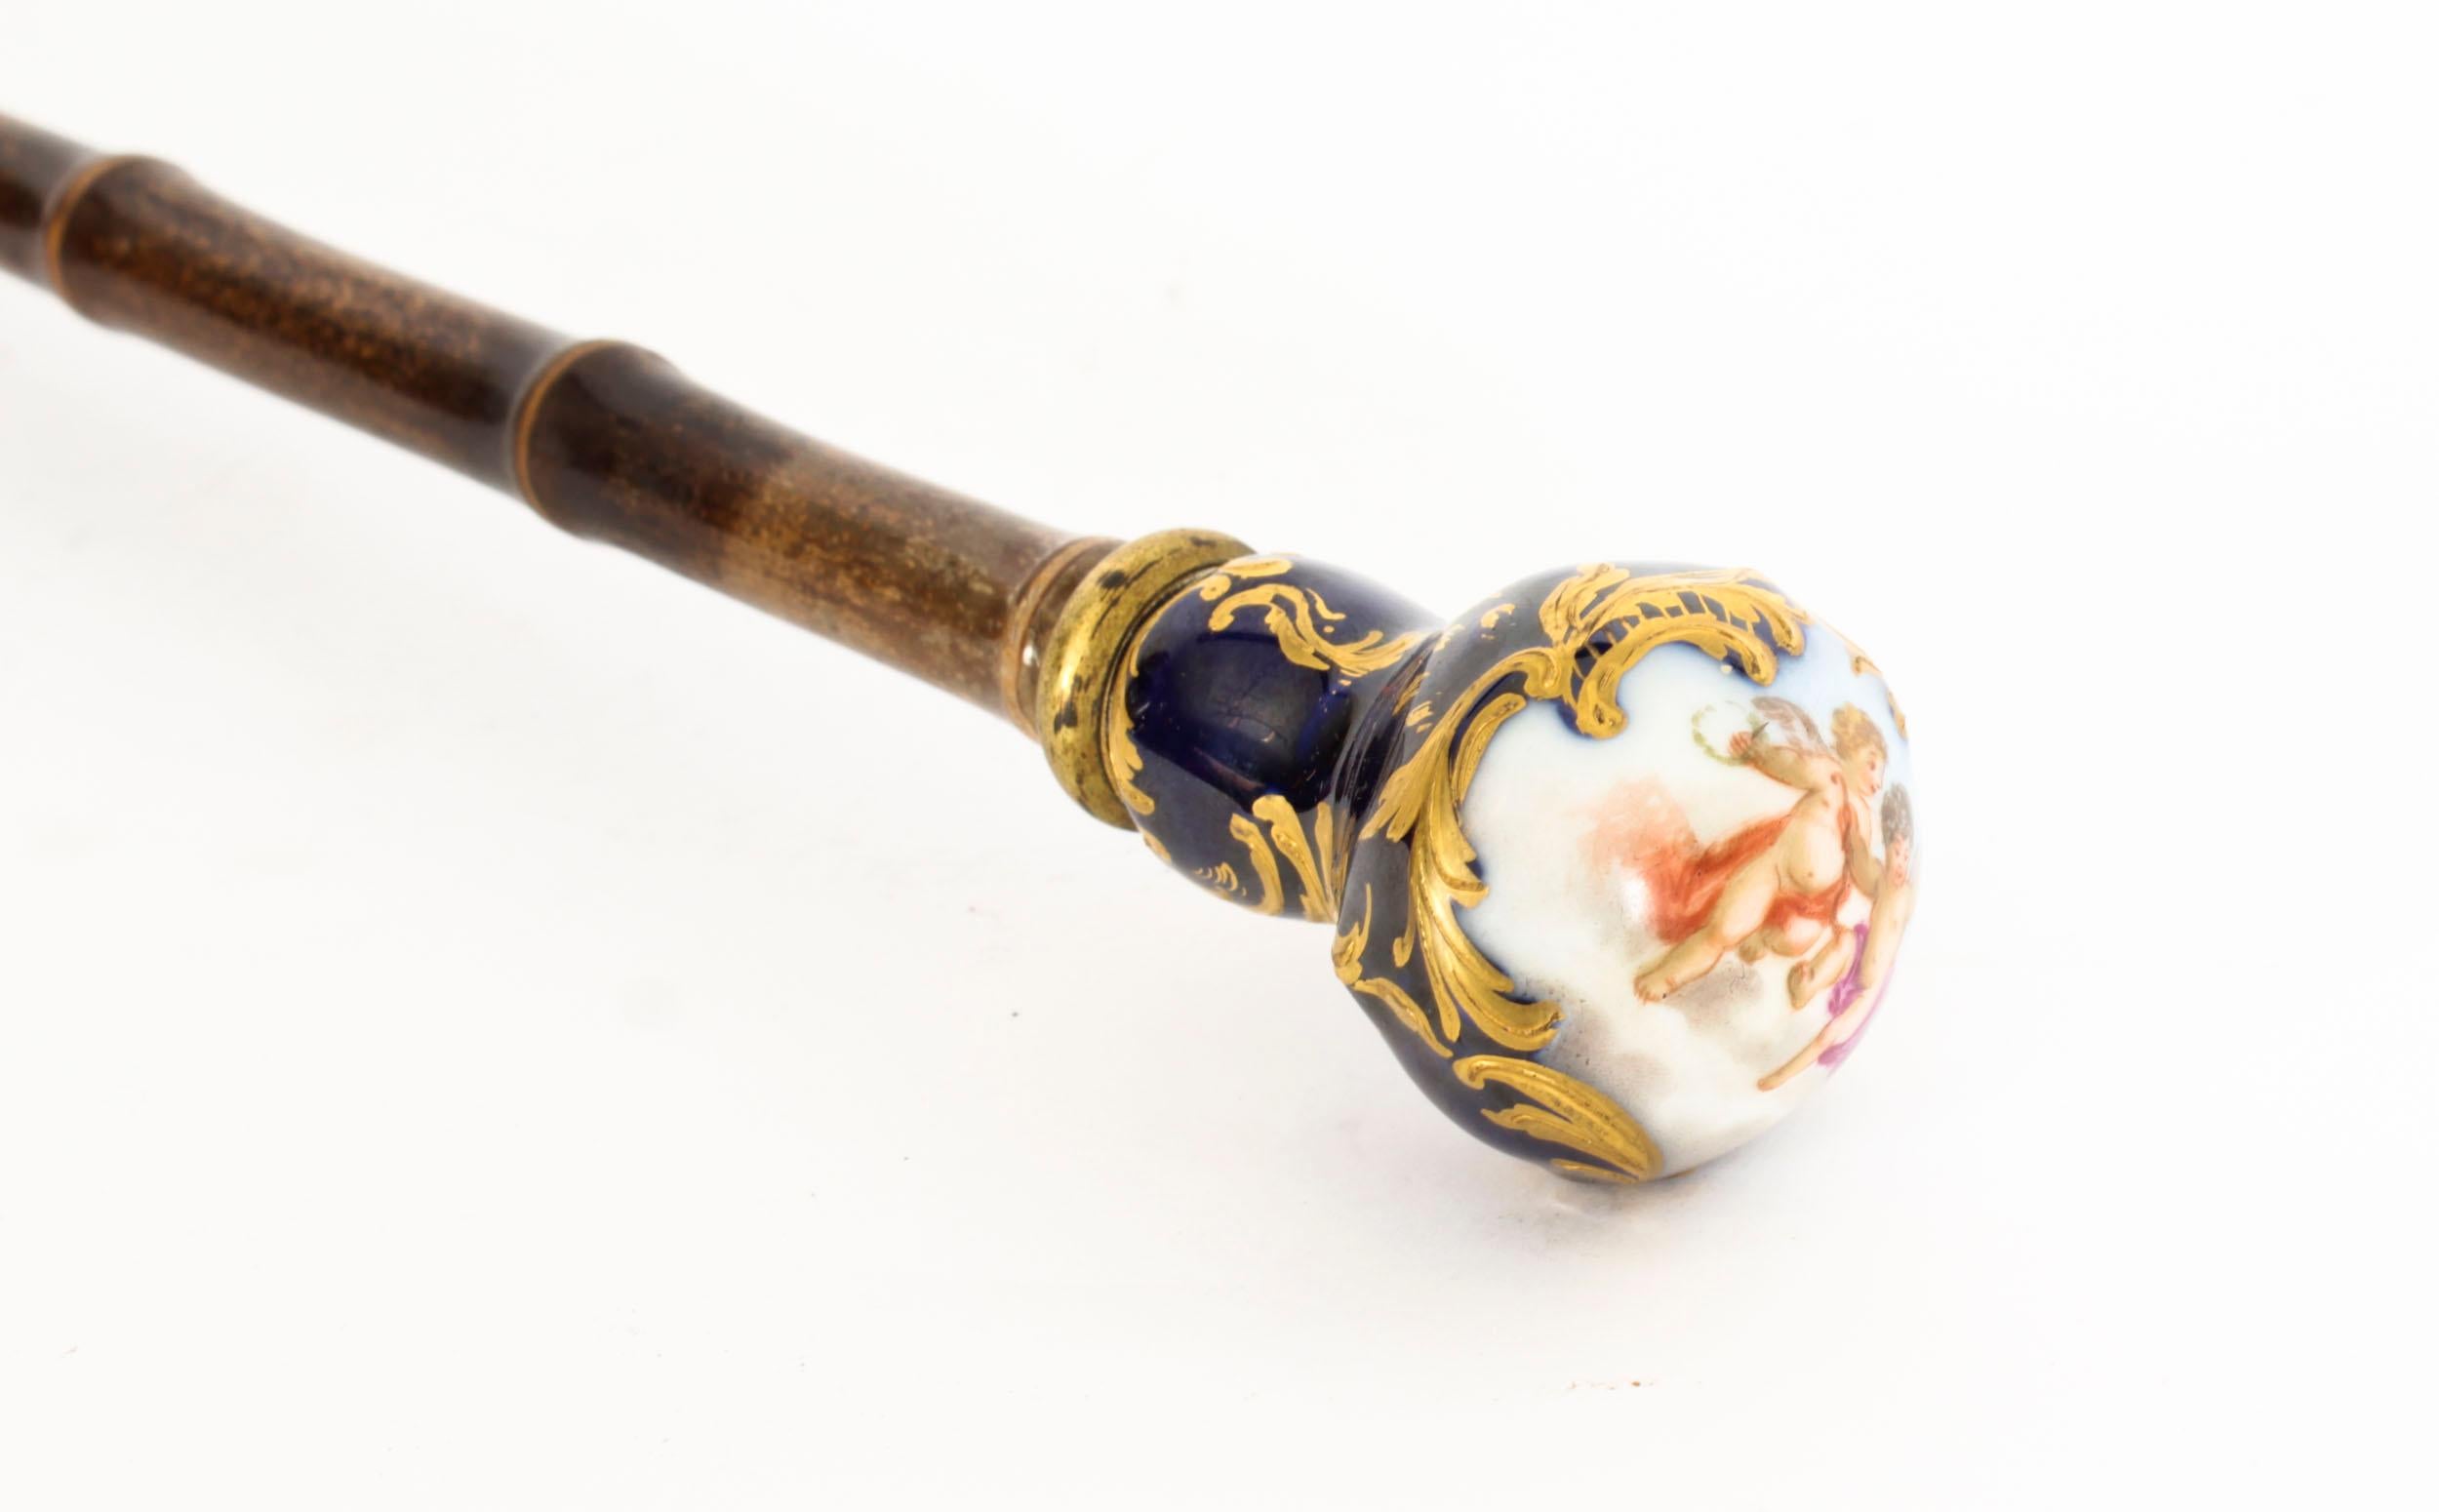 Voici une magnifique canne ancienne en porcelaine peinte à la main avec une poignée sphérique à la manière de Sèvres, avec une poignée en bambou.  arbre, Circa 1880 en date.

La poignée est magnifiquement décorée d'une vignette quadrilobée